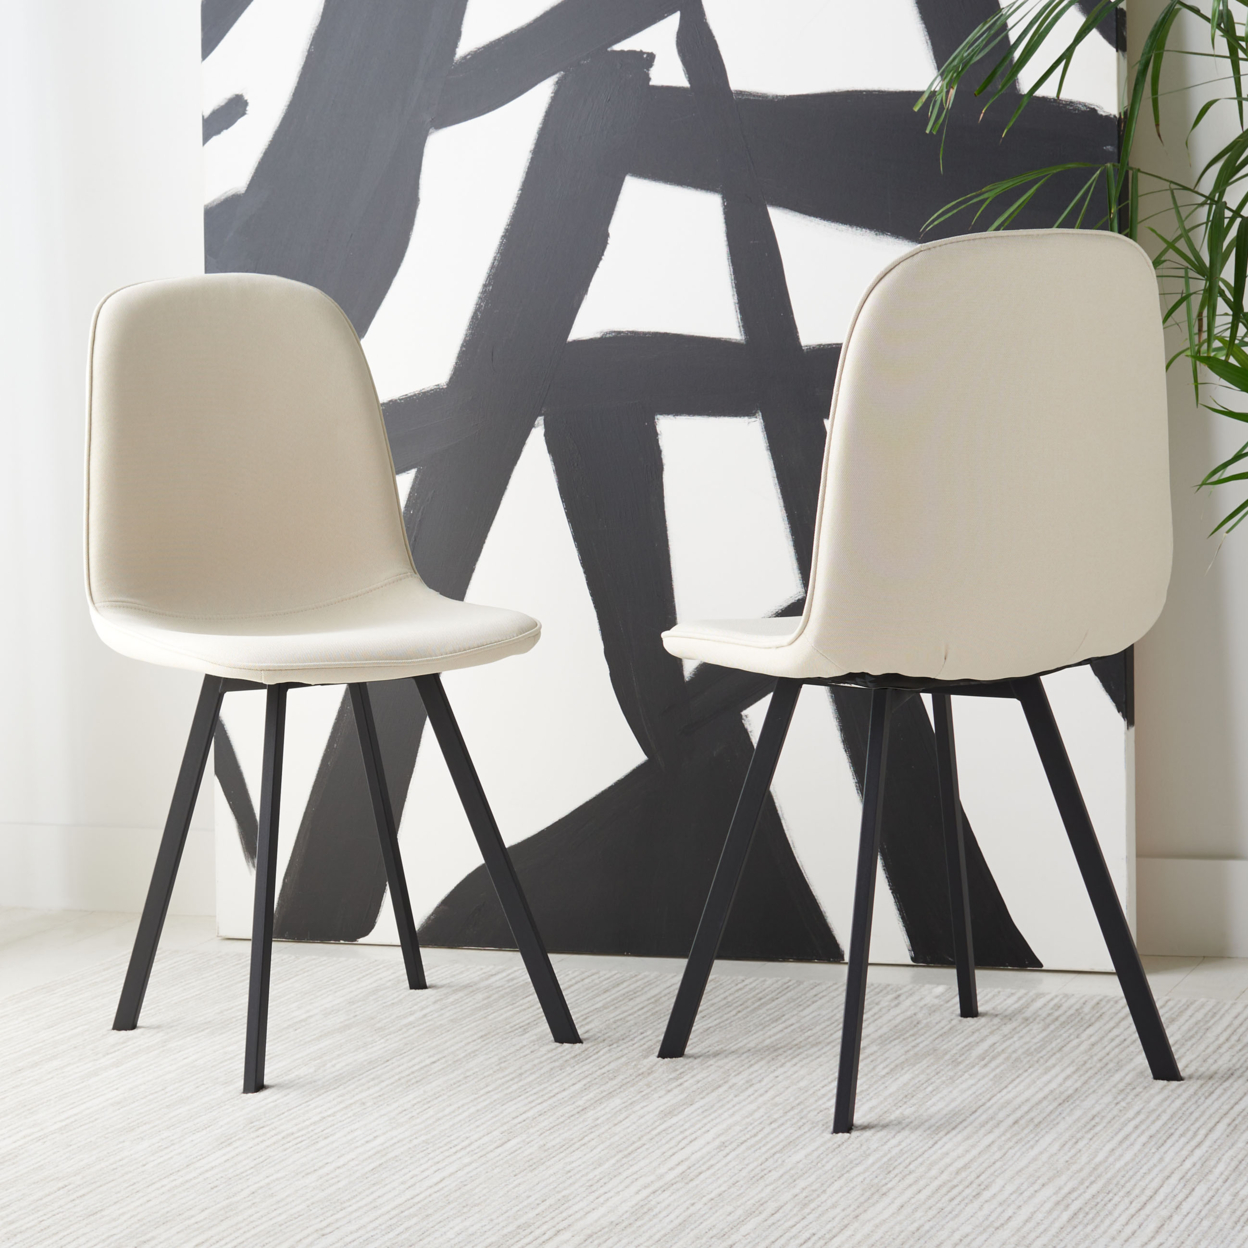 SAFAVIEH Ellery Dining Chair Set Of 2 Beige / Black